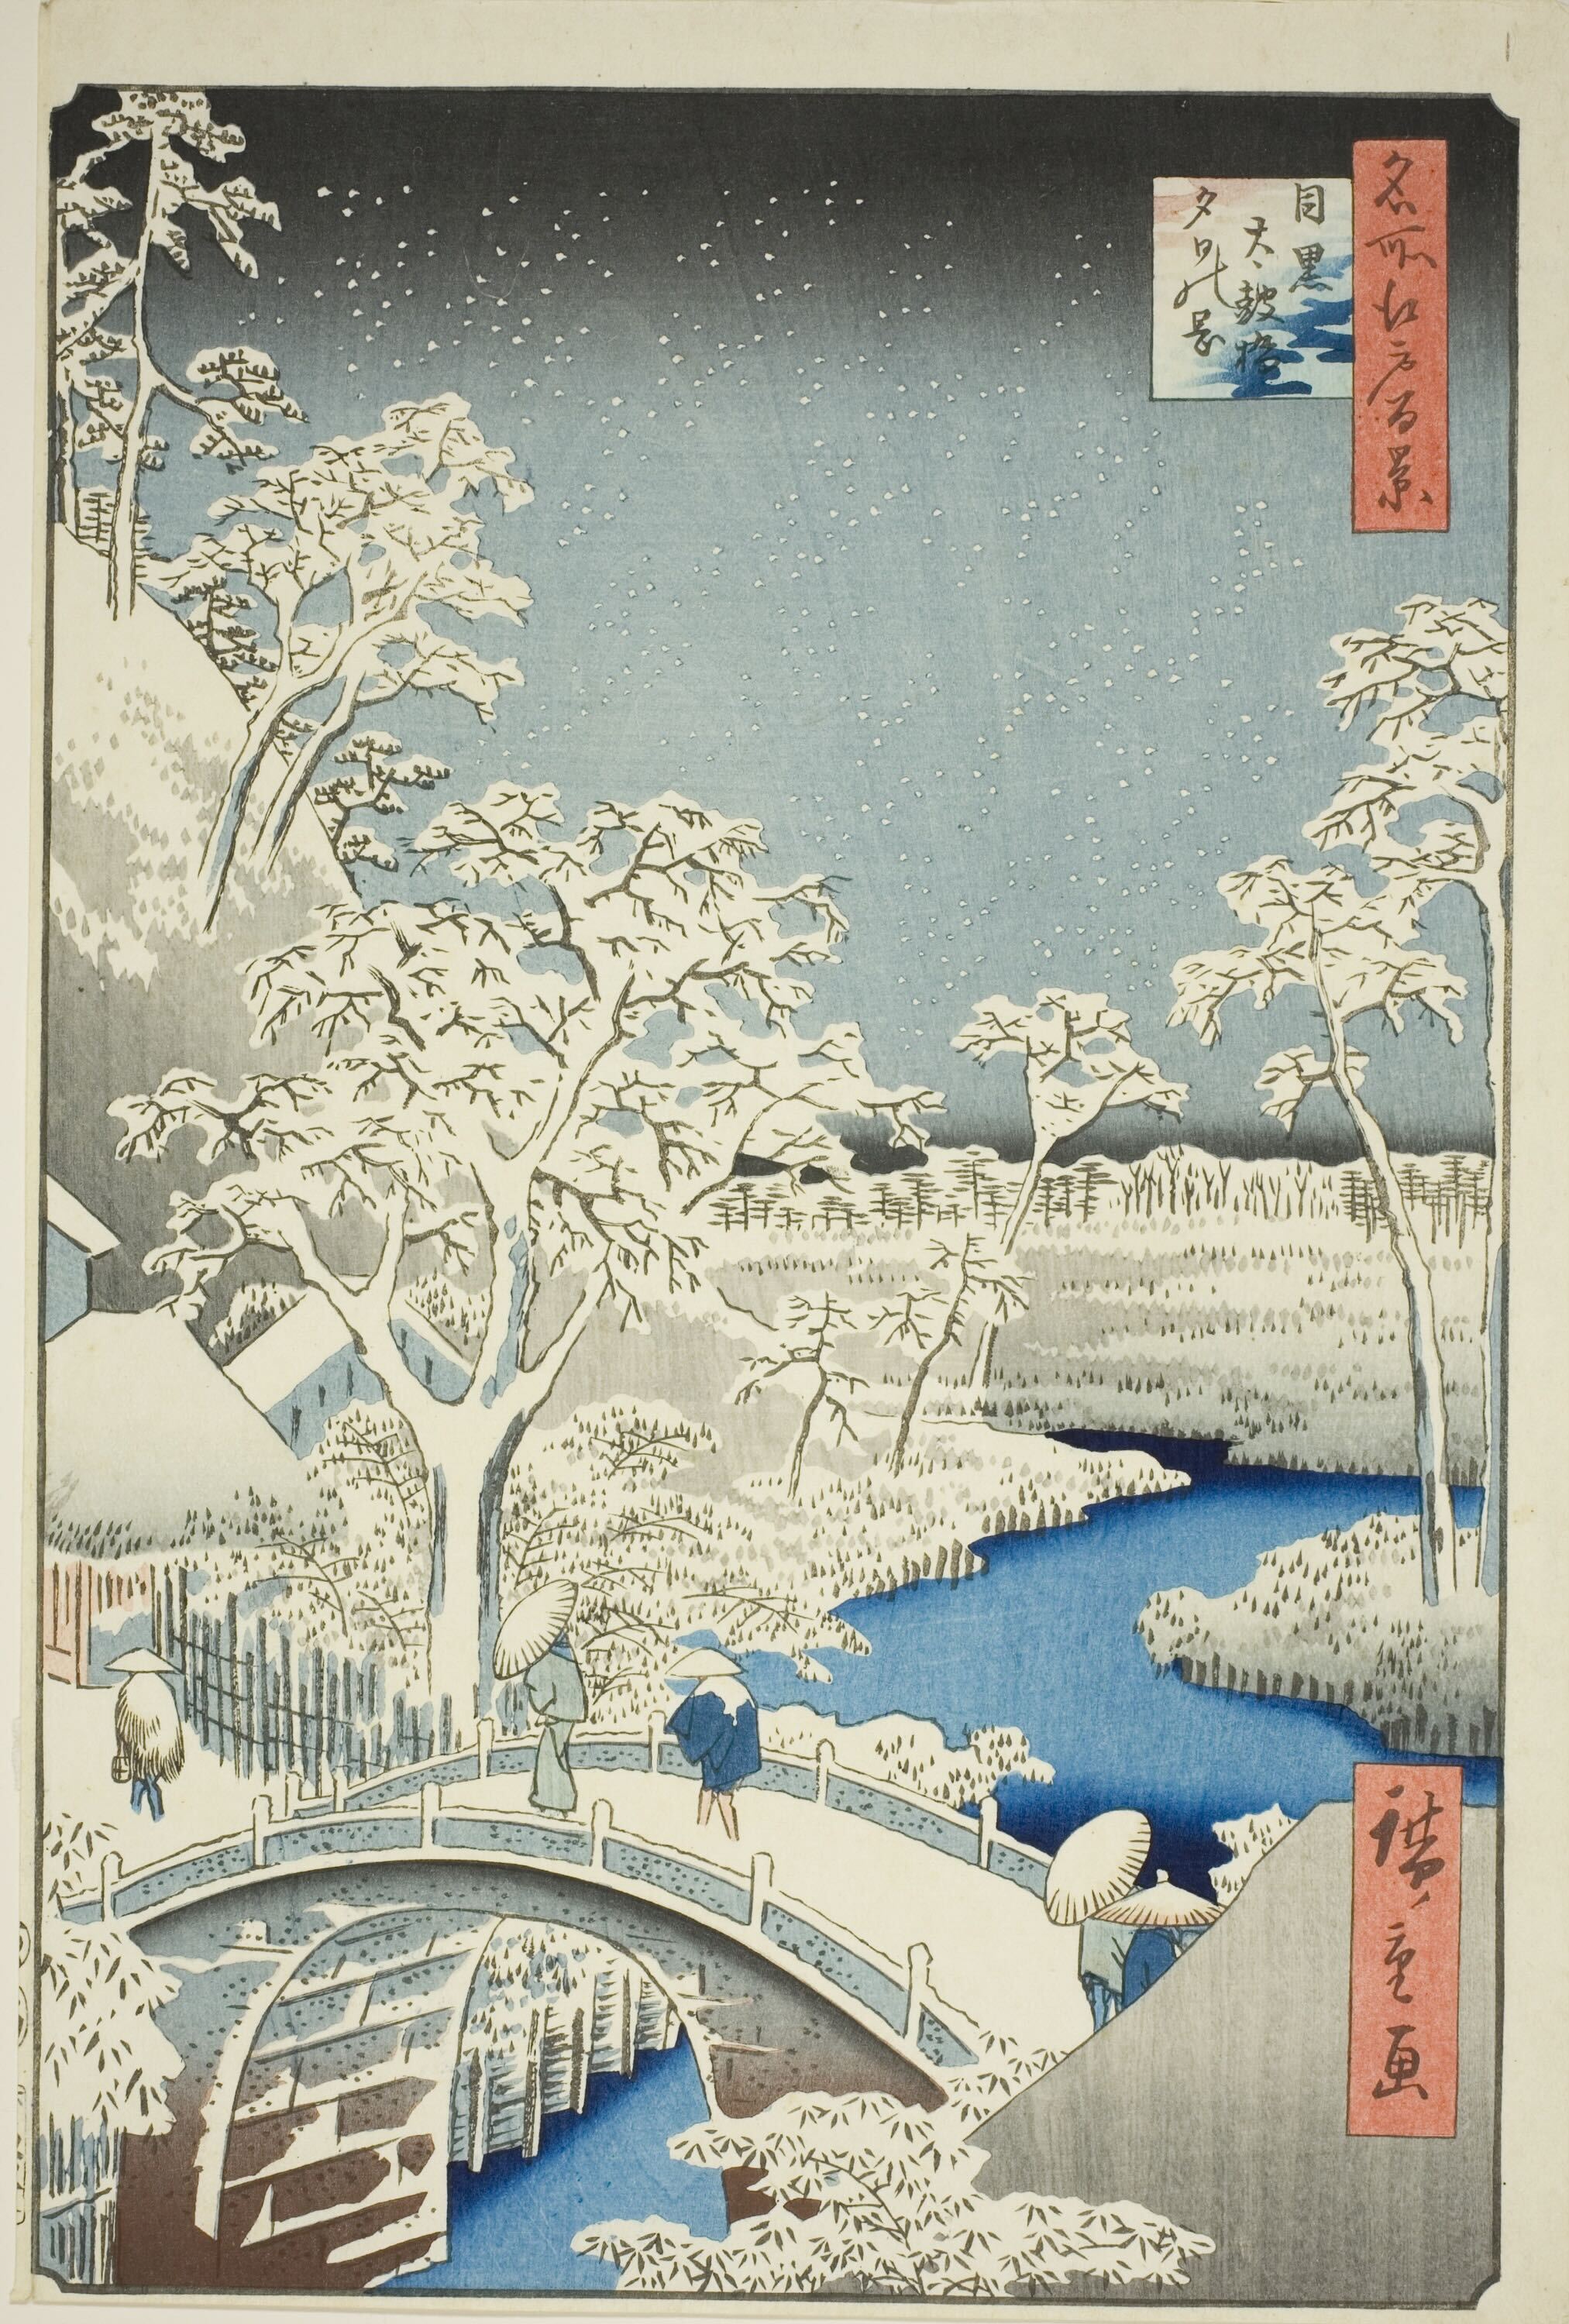 메구로 시, 타이코 다리의 눈 내리는 저녁 by  Hiroshige - 1857년 - 36.2 x 23.5 cm 